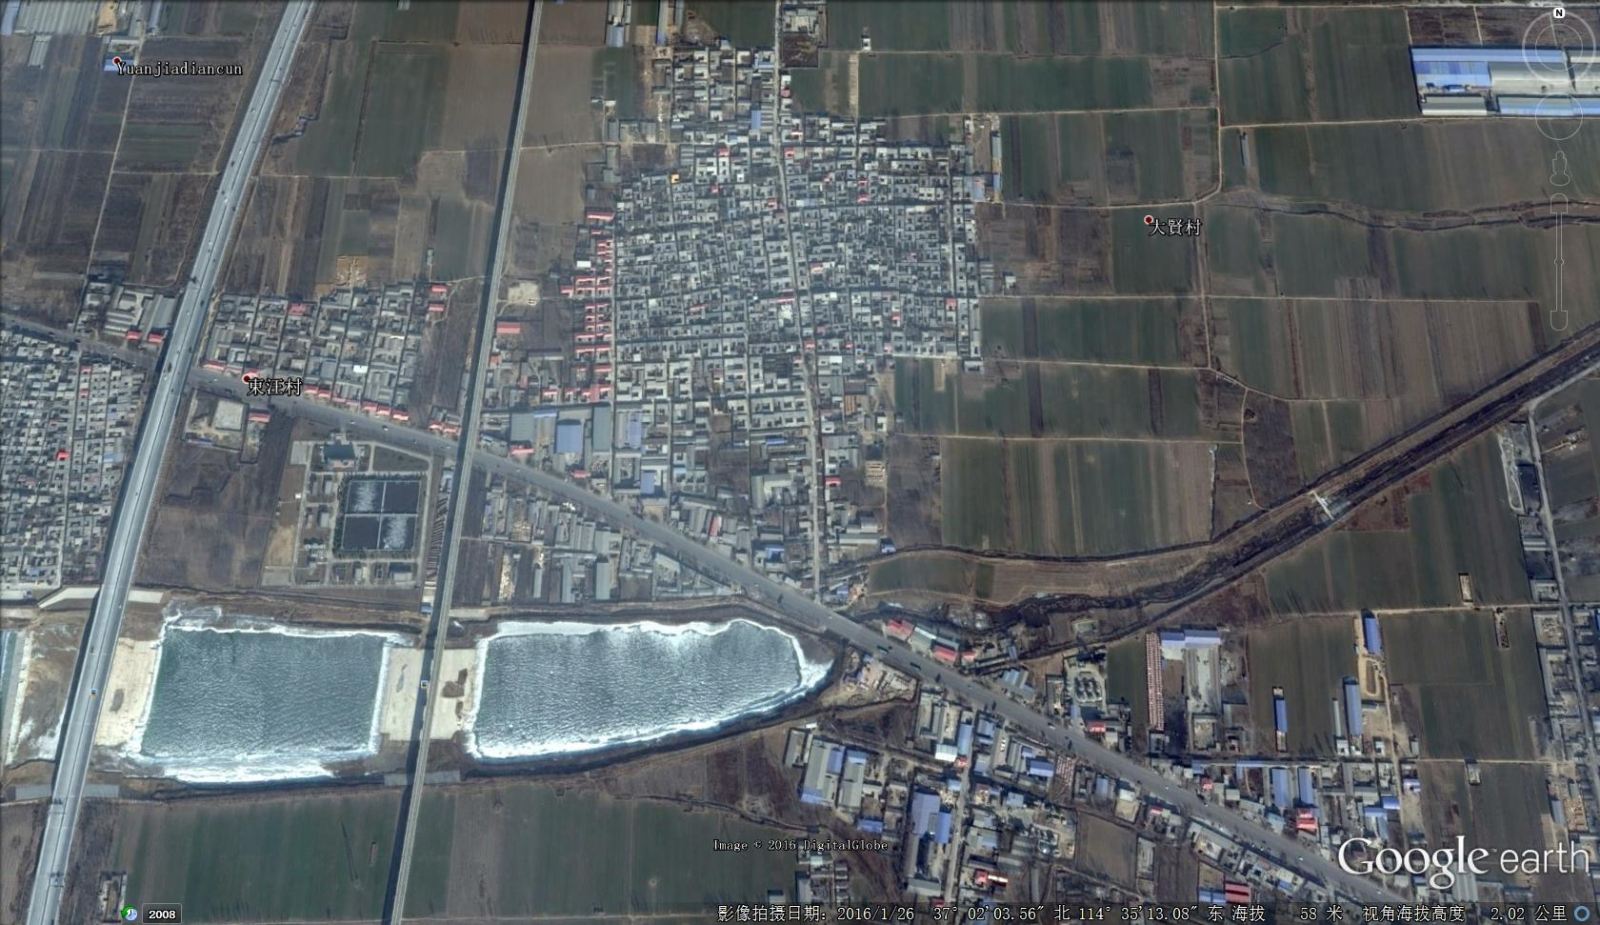 卫星图解密邢台为何发生水患:七里河河道突然